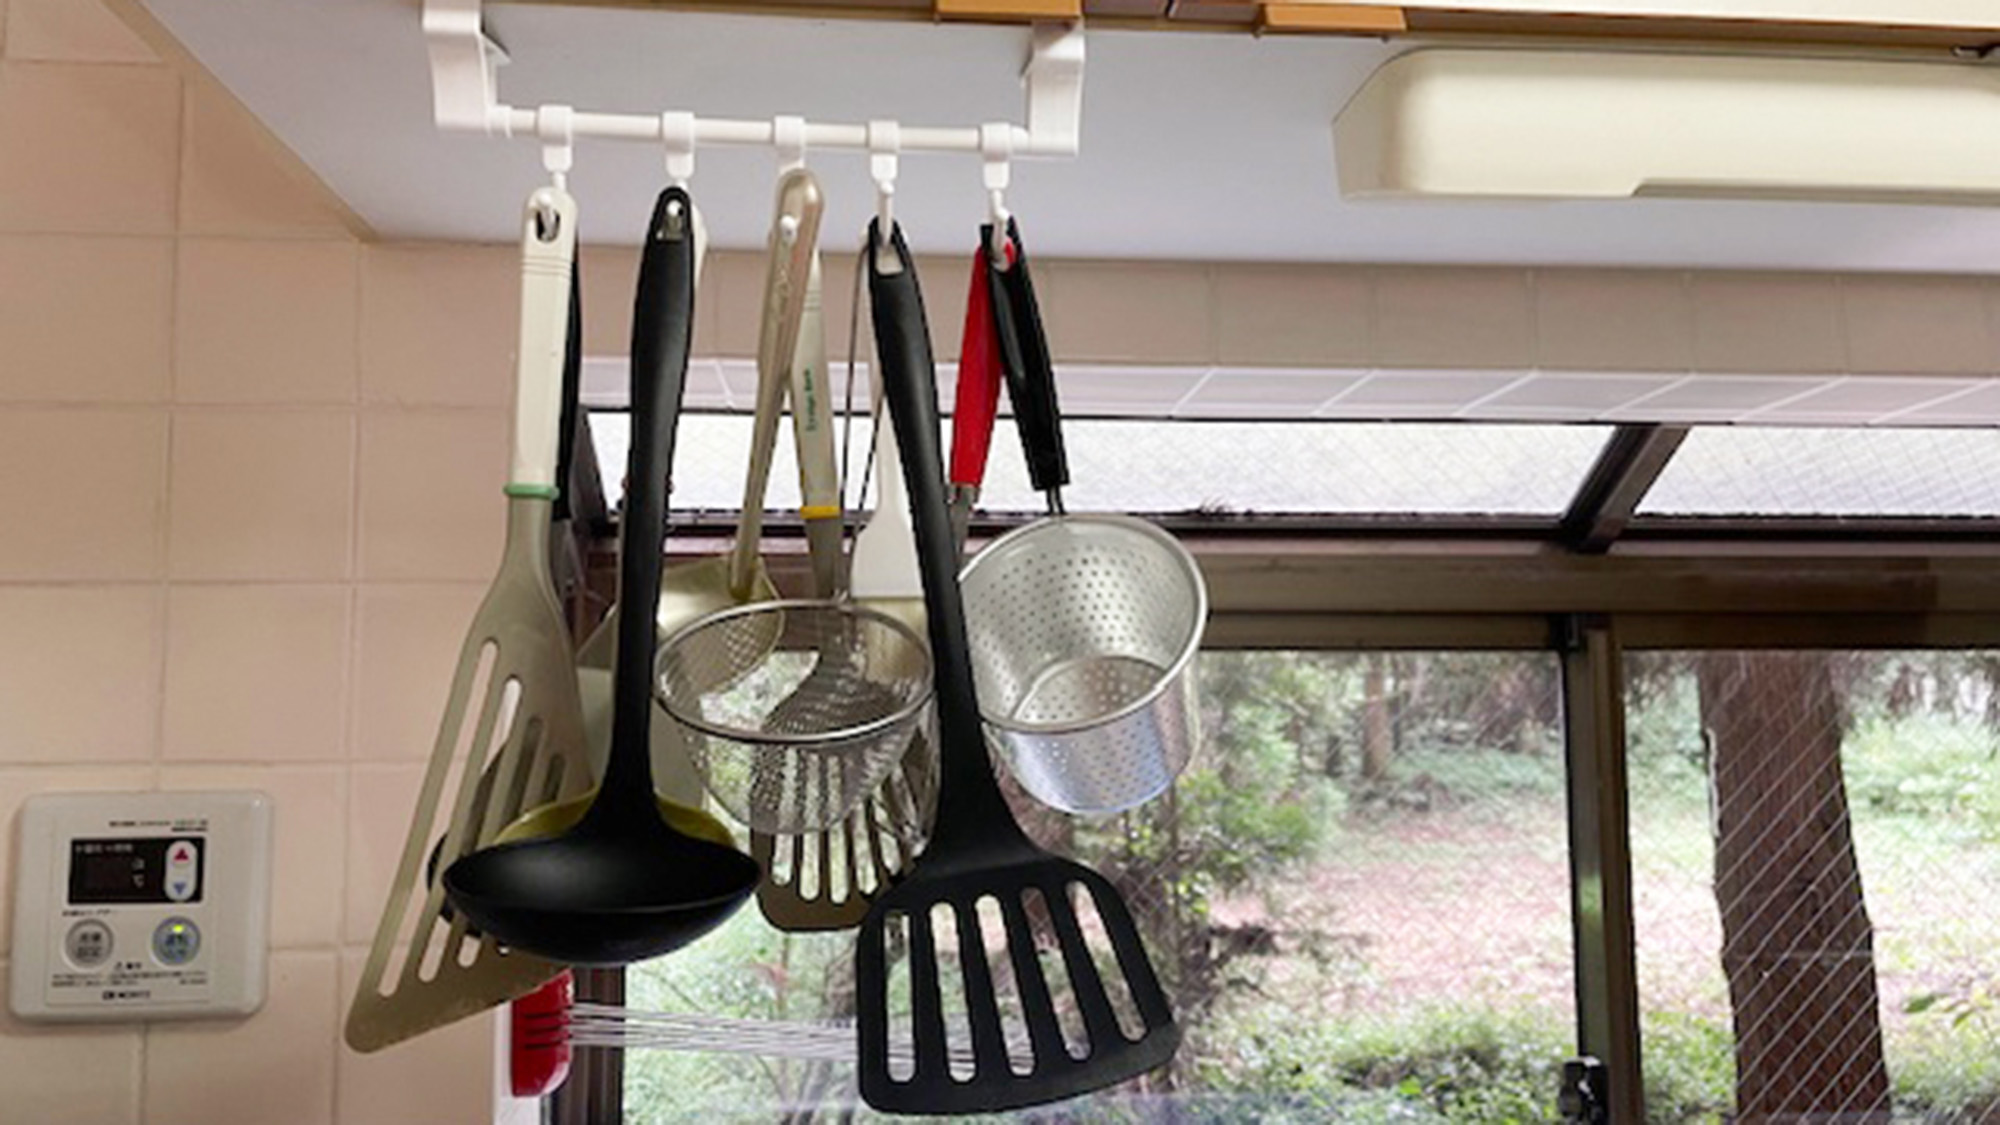 ・【キッチン】様々な調理器具をご用意しております。ご自由にお使いください